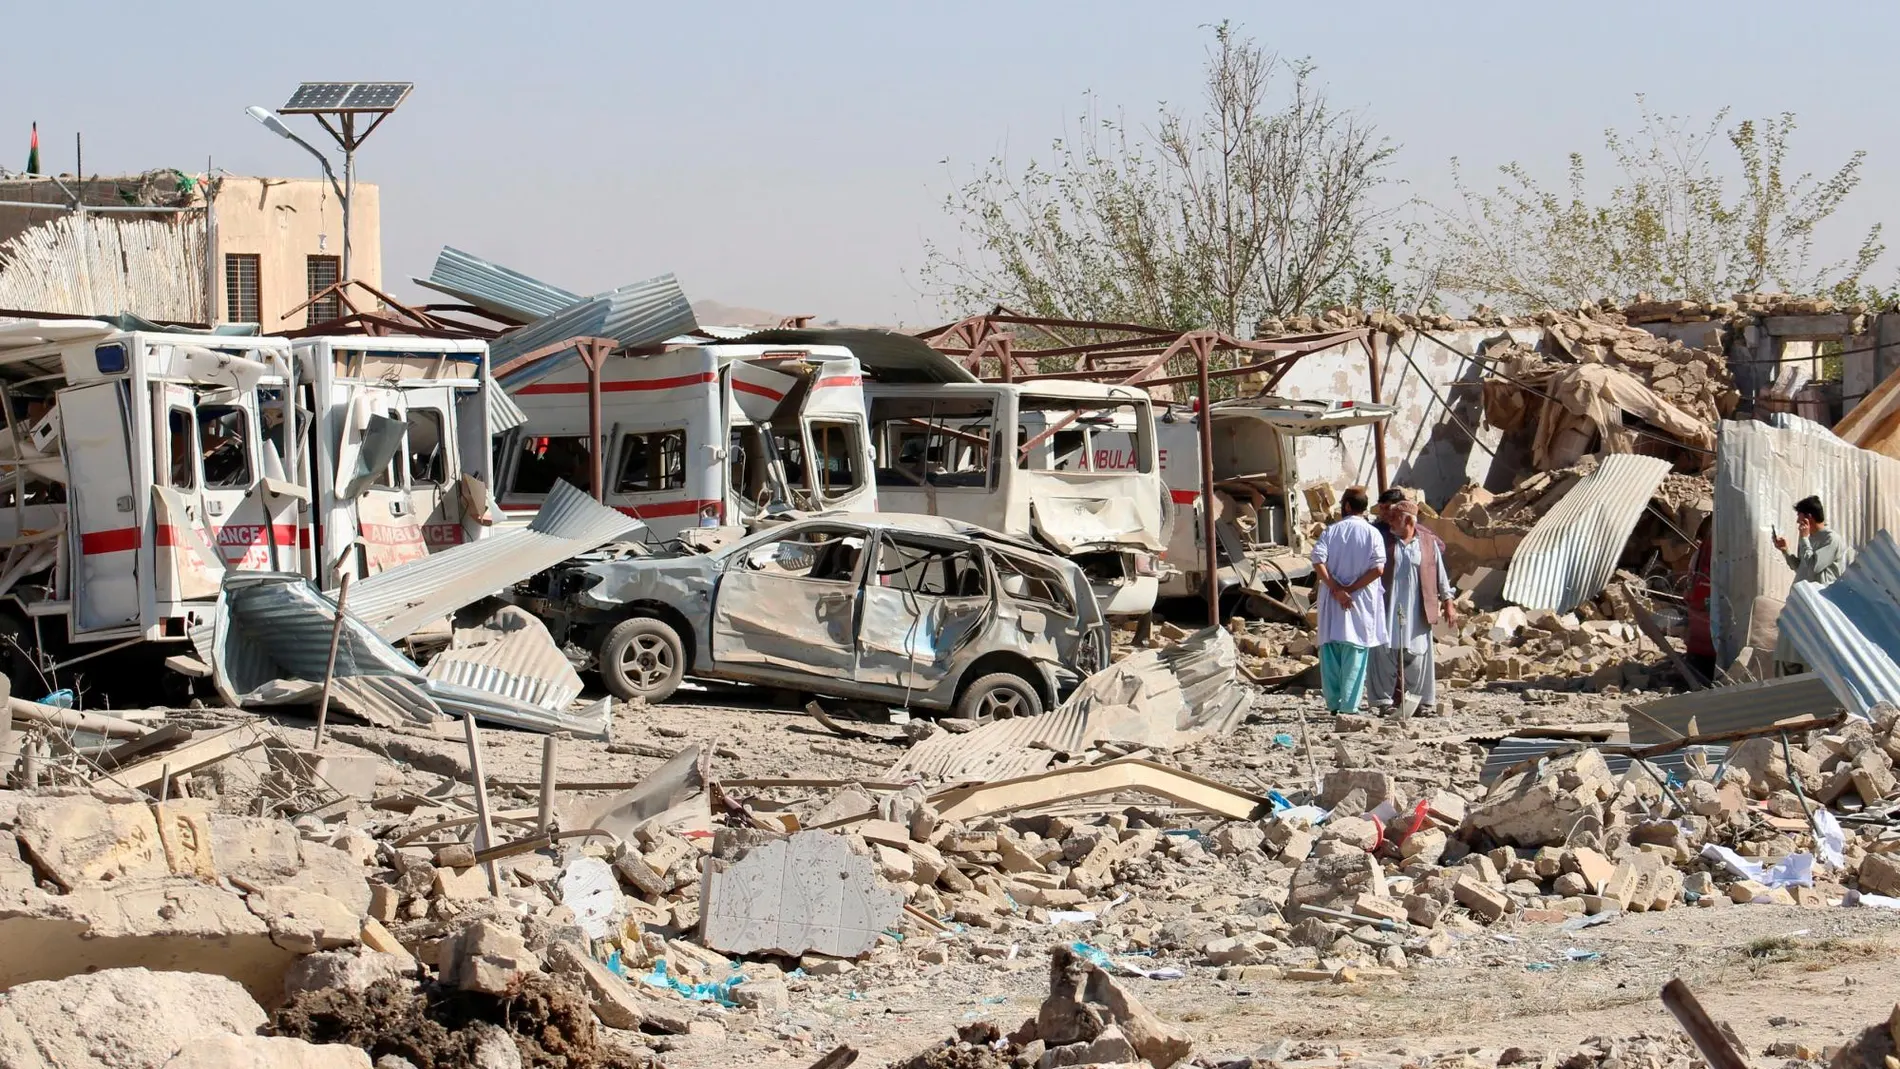 Vehículos dañados tras un atentado con coche bomba en Qalat, Afganistán / Reuters